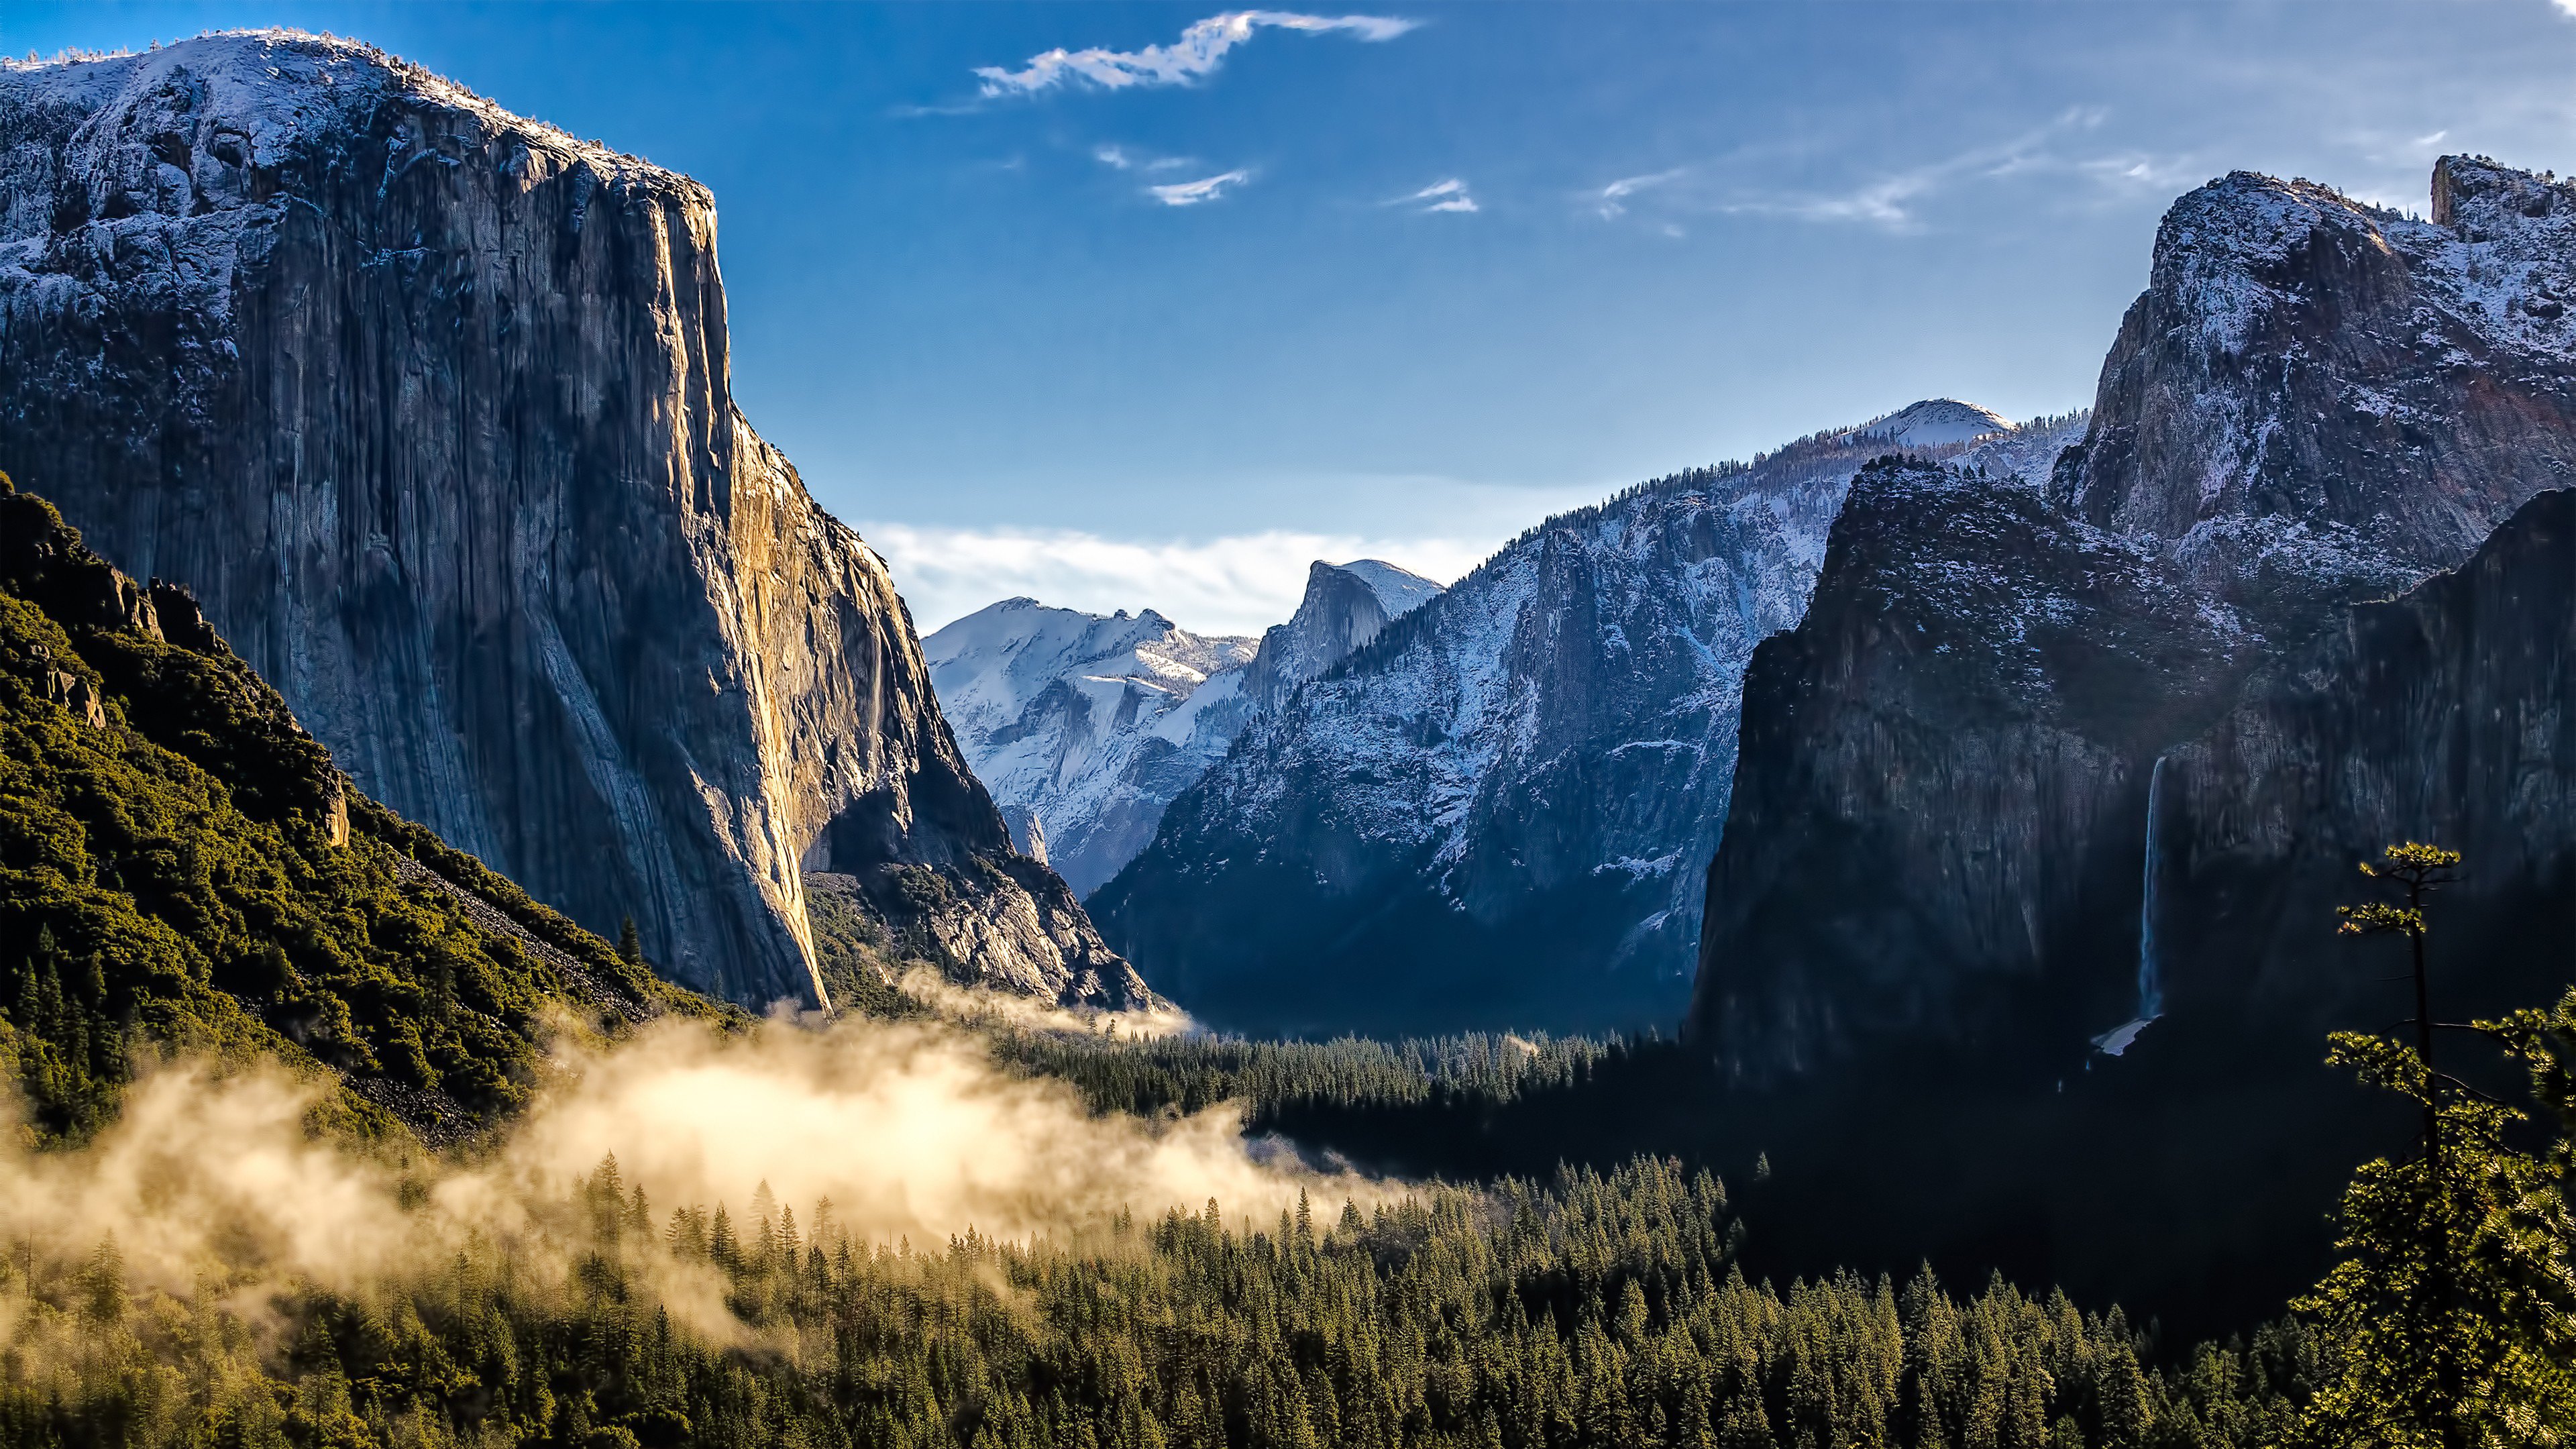 Hình nền Yosemite 4K sẽ đưa bạn đến với nơi này hùng vĩ và đẹp tuyệt vời. Bạn sẽ được ngắm nhìn những cảnh đẹp của thiên nhiên và có được trải nghiệm tuyệt vời trên màn hình của mình. Hãy truy cập ngay để khám phá những hình ảnh Yosemite tuyệt vời nhất.